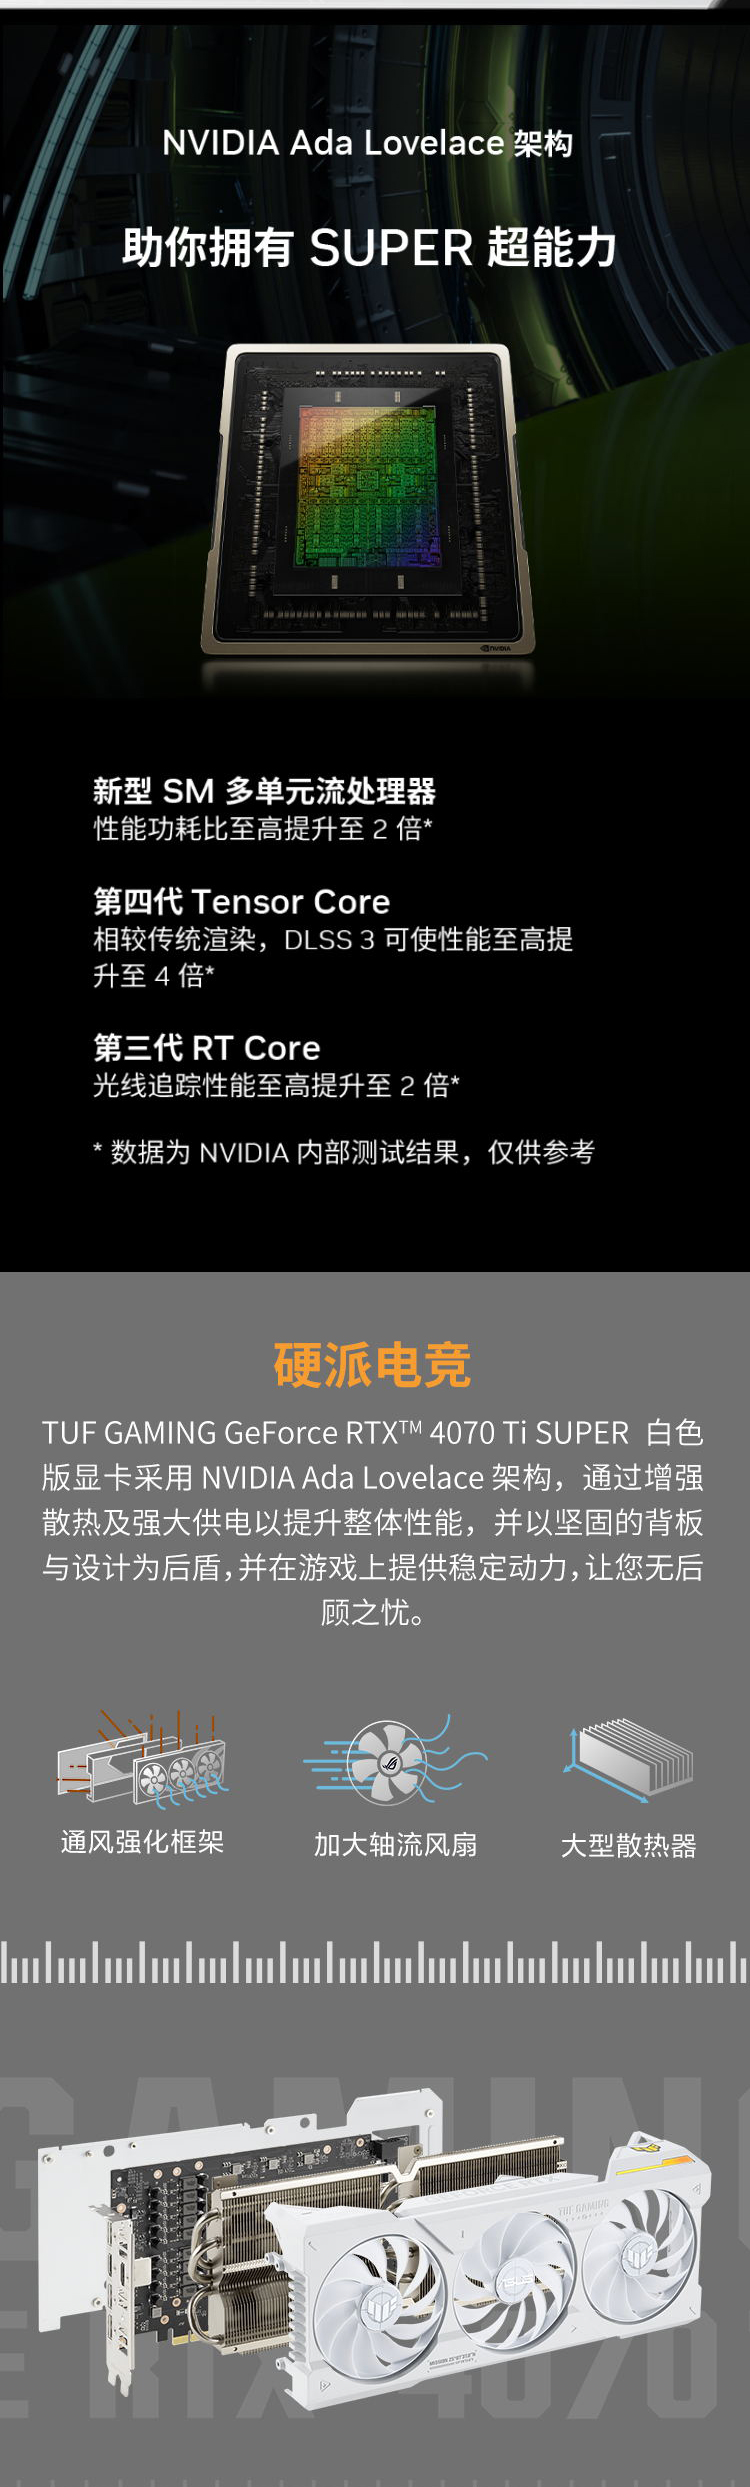 NVIDIA GT 630 MX：游戏表现再升级  第2张